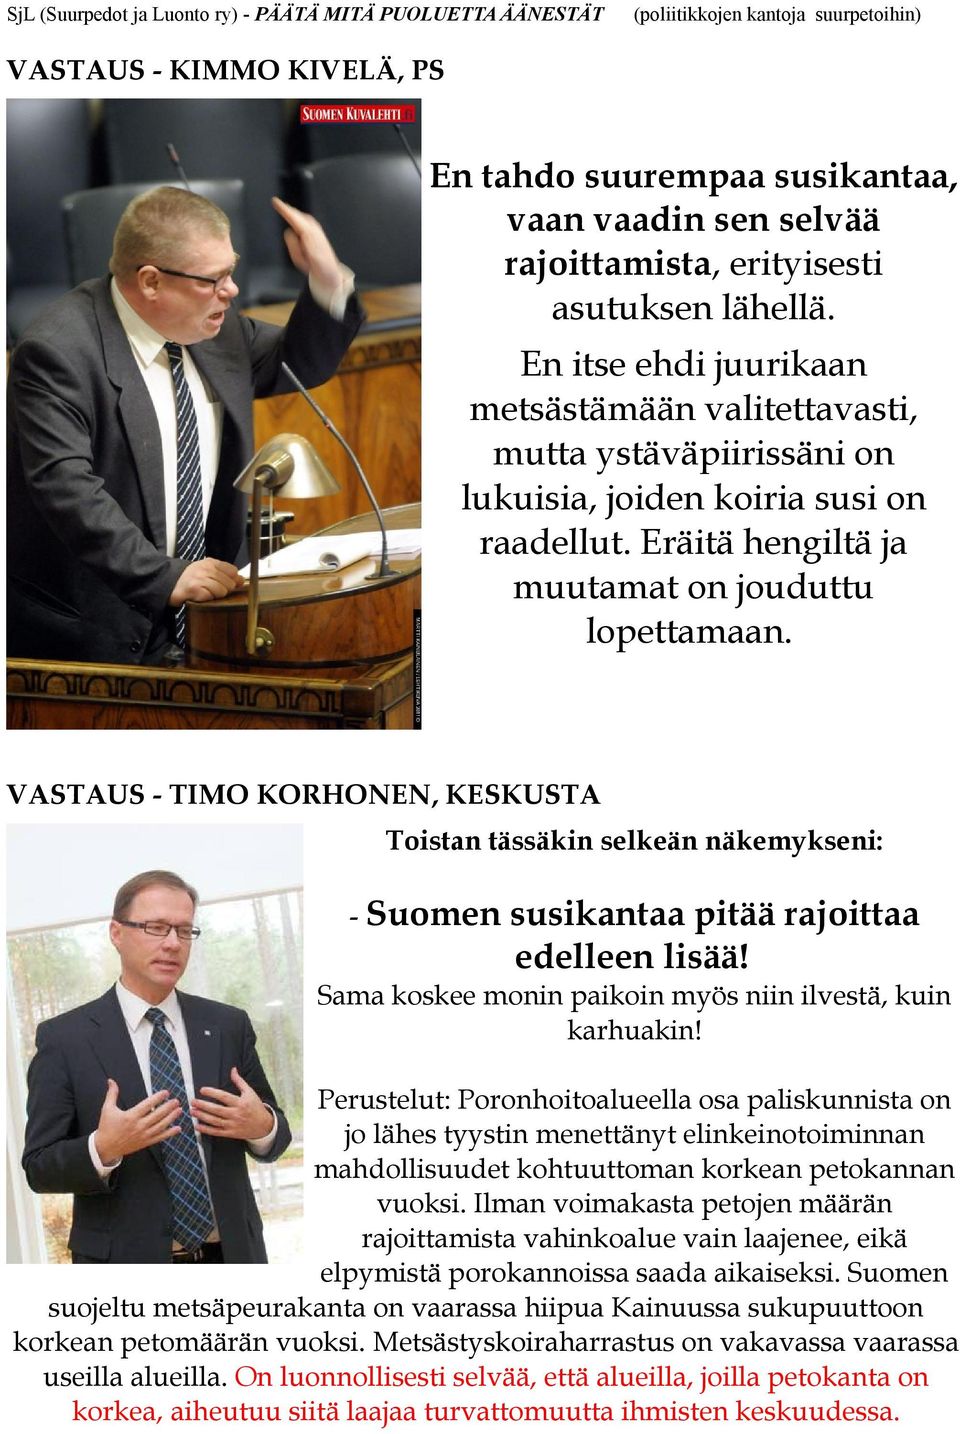 VASTAUS - TIMO KORHONEN, KESKUSTA Toistan tässäkin selkeän näkemykseni: - Suomen susikantaa pitää rajoittaa edelleen lisää! Sama koskee monin paikoin myös niin ilvestä, kuin karhuakin!